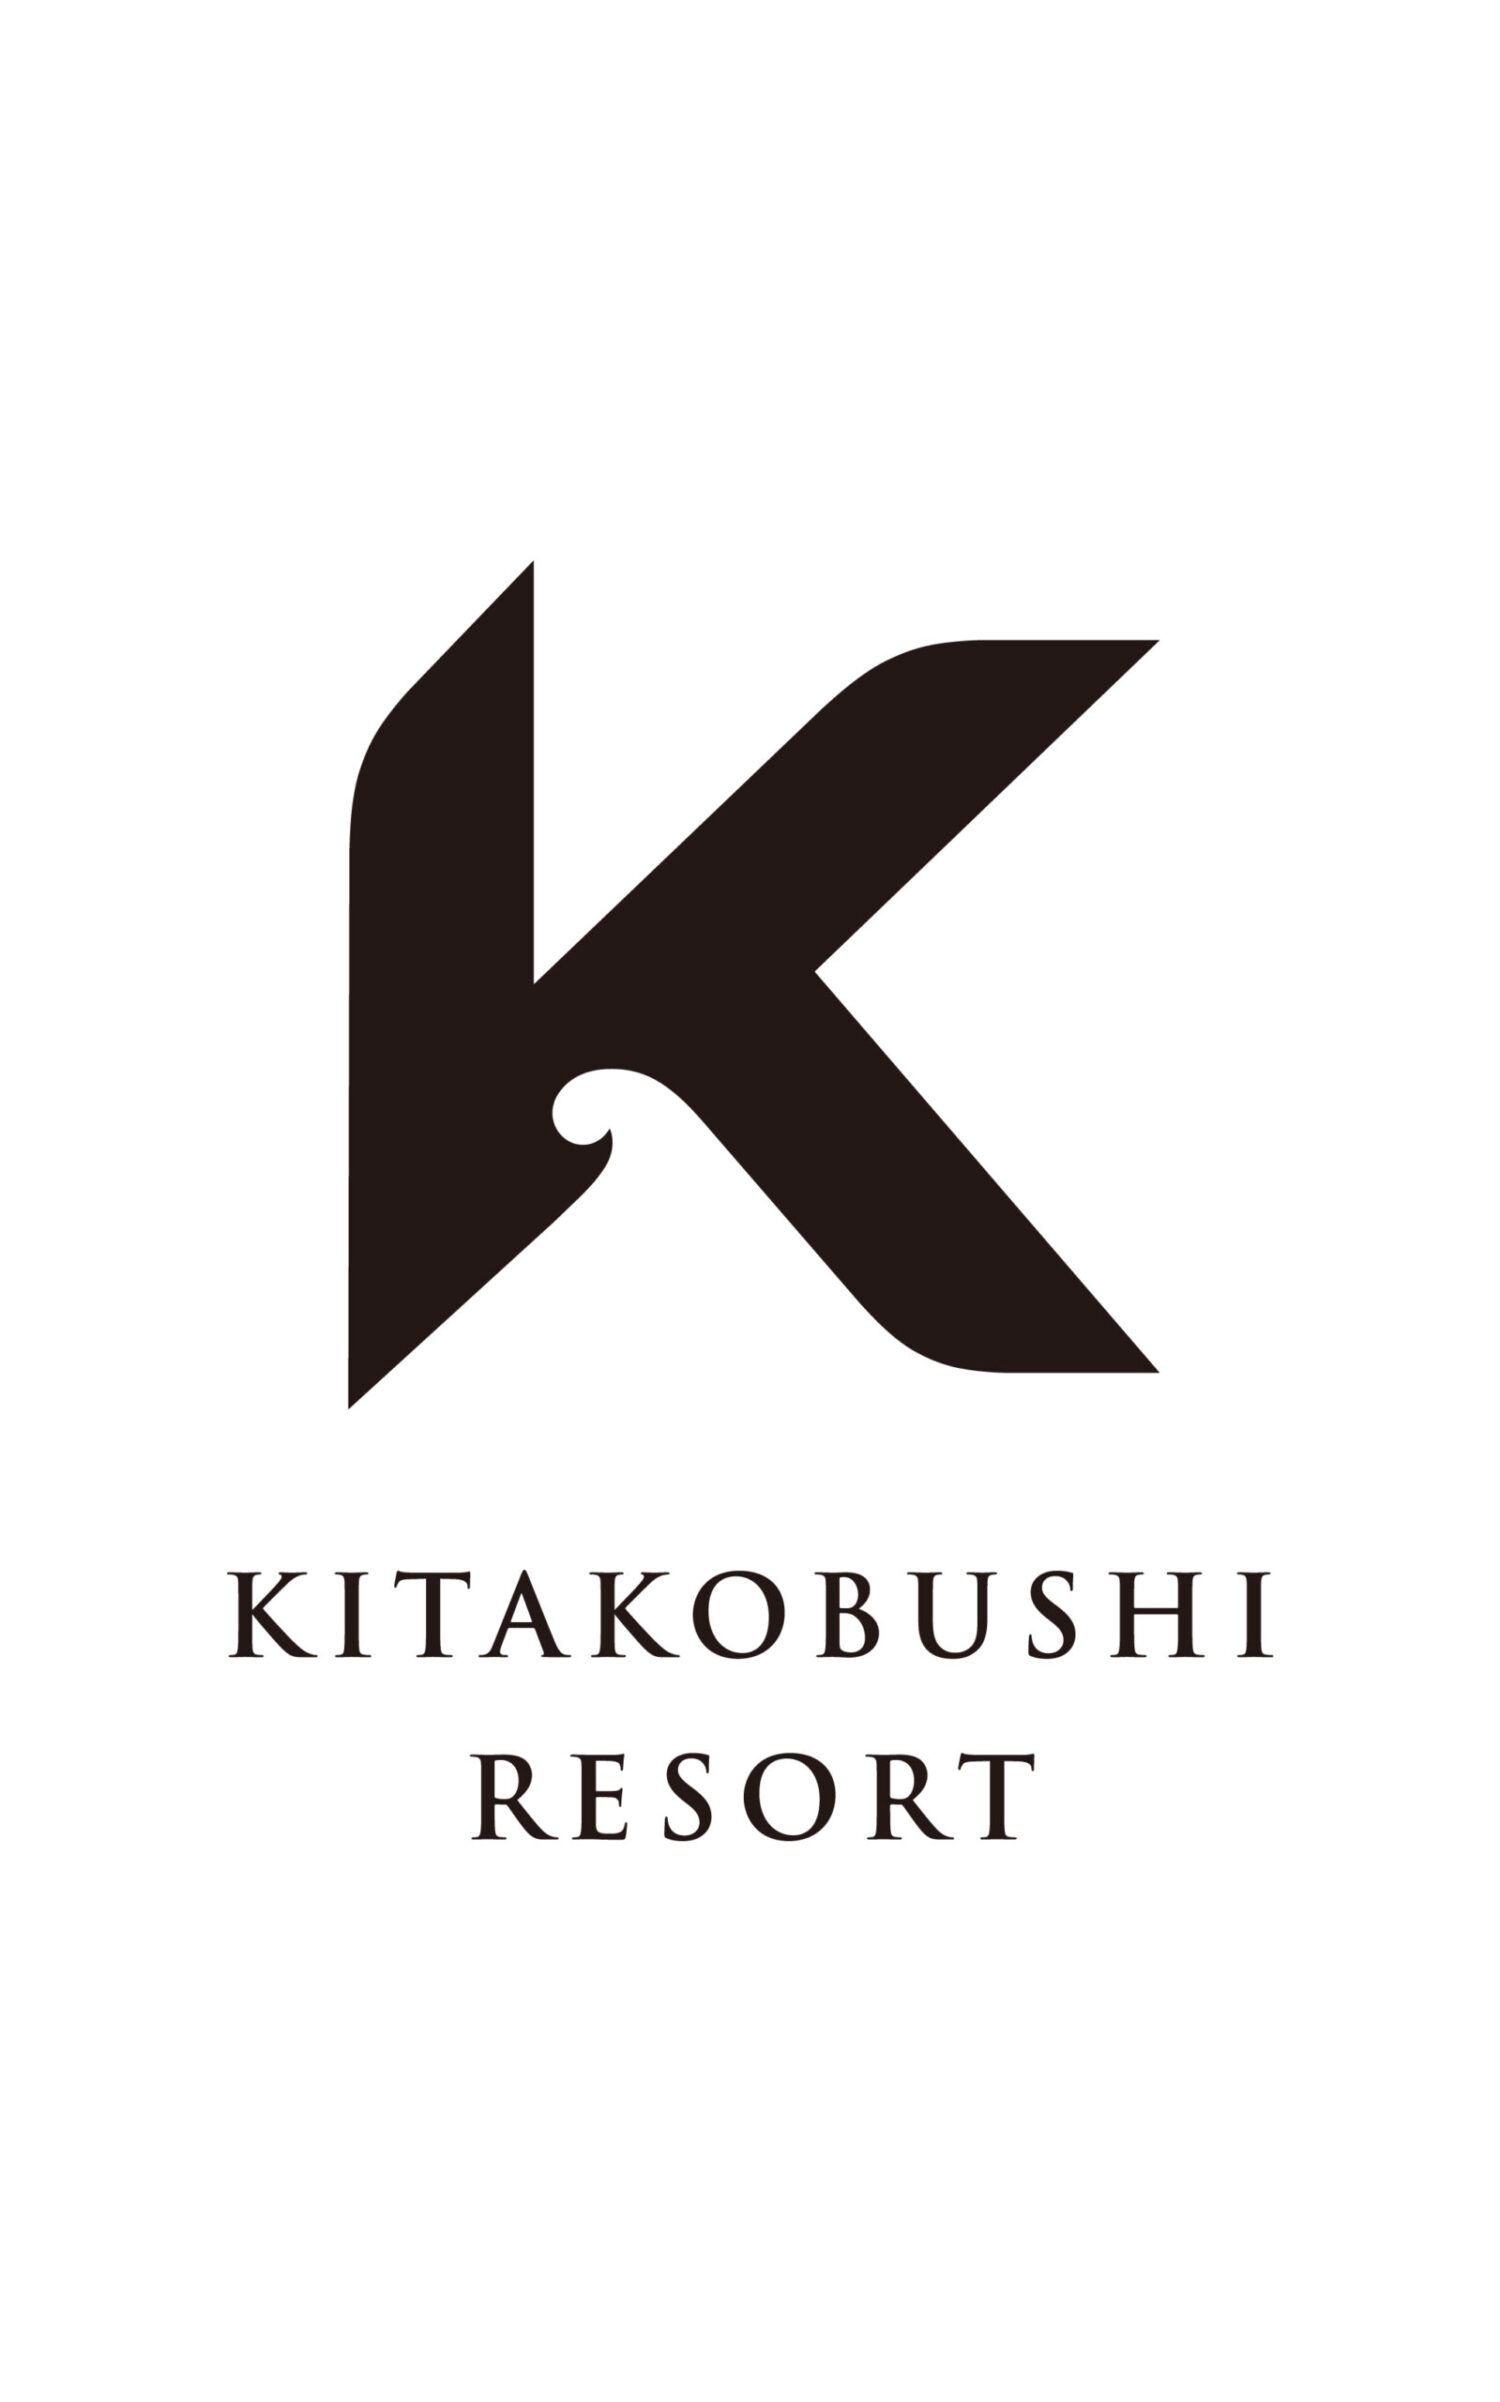 KITAKOBUSHI RESORT